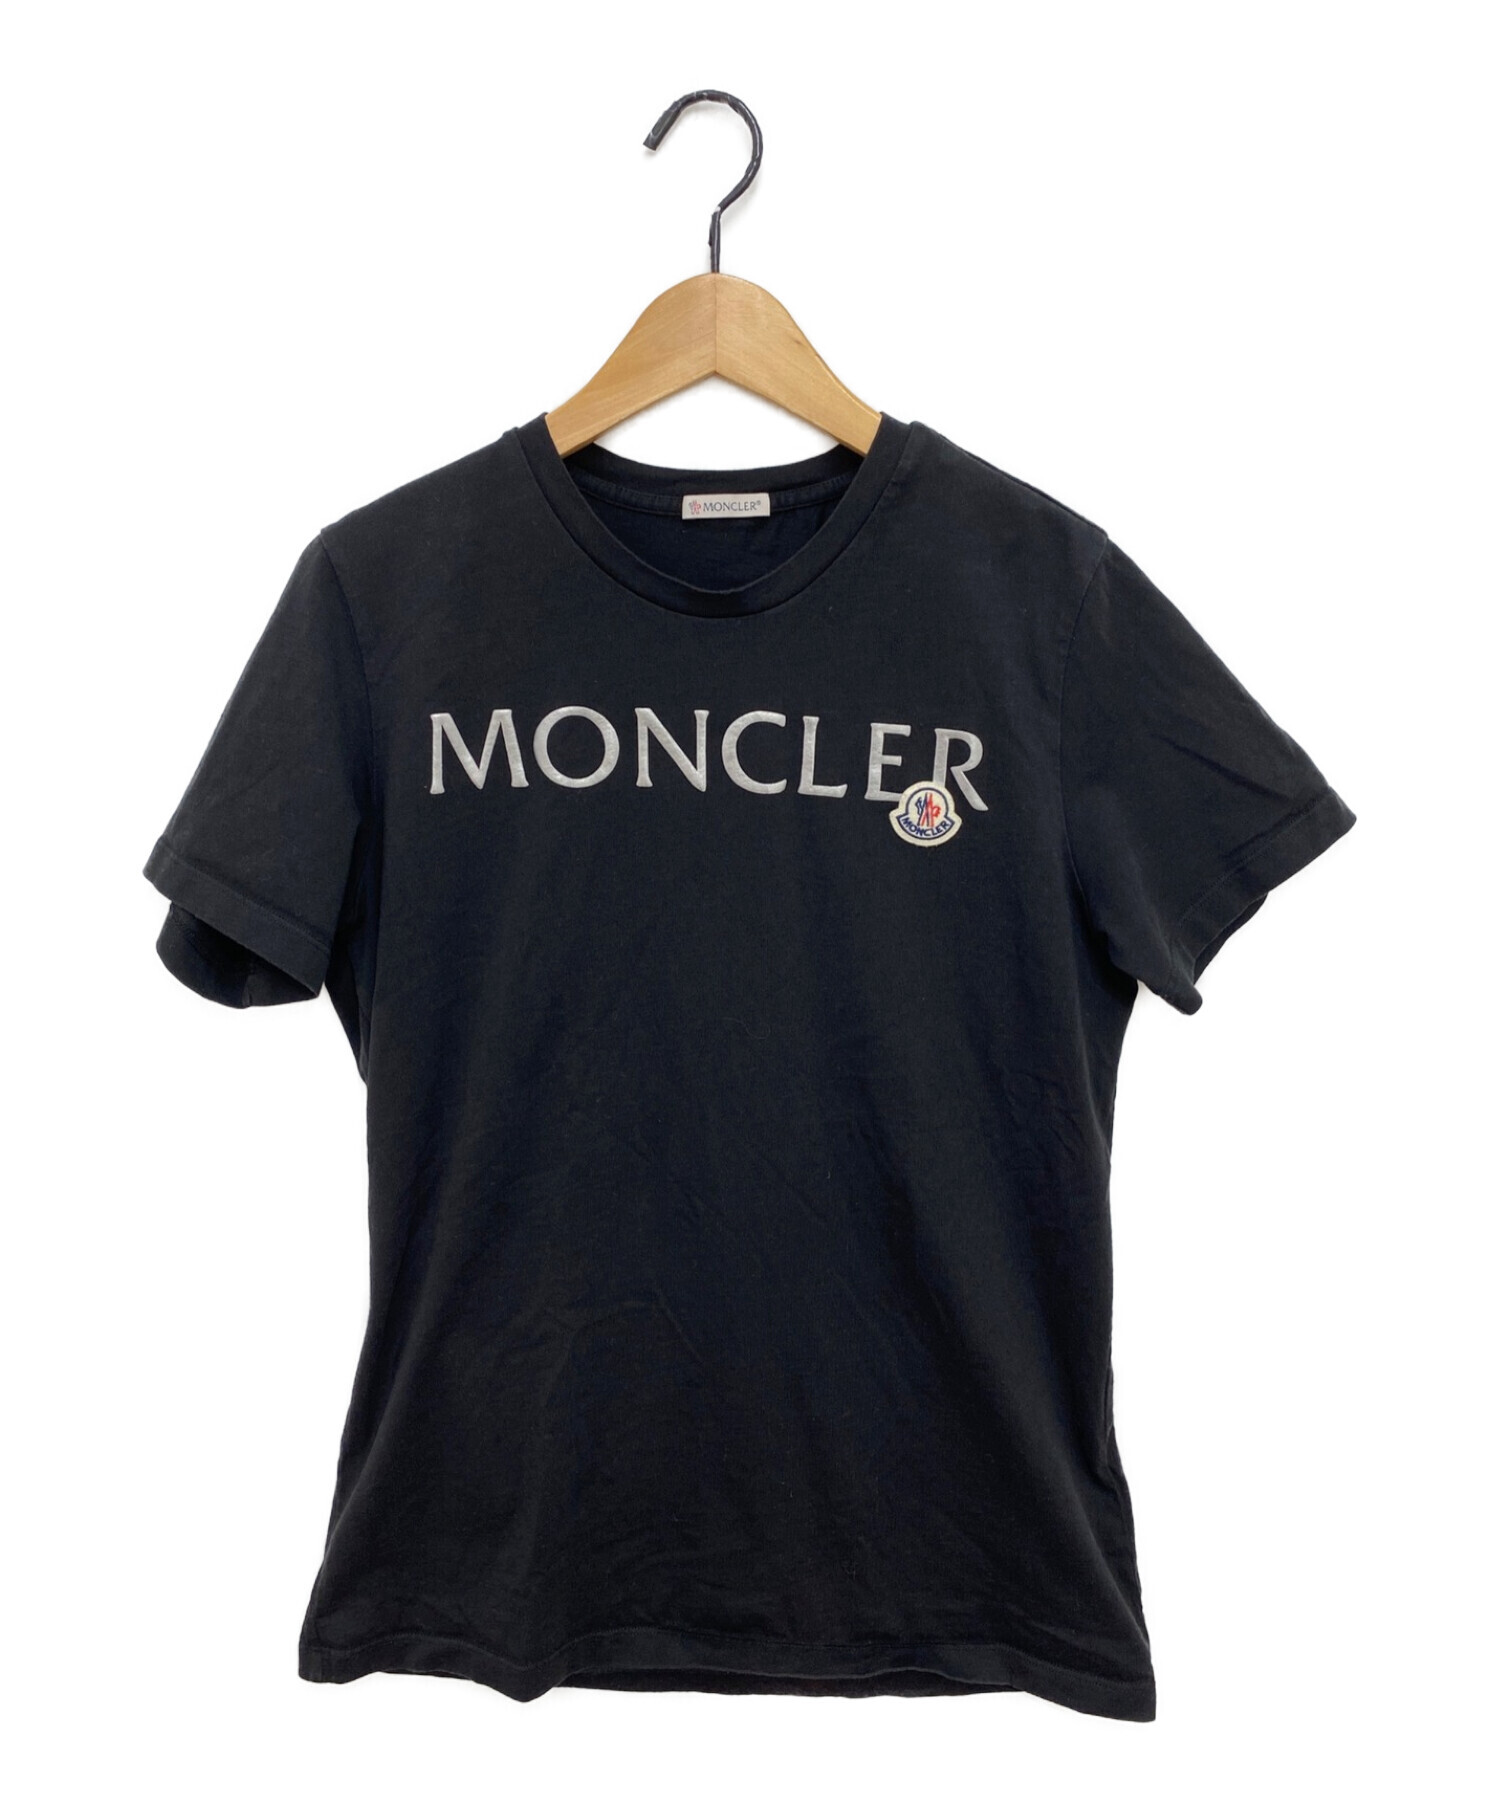 優待価格MONCLER モンクレール Tシャツ ロゴ 21SS 丸首